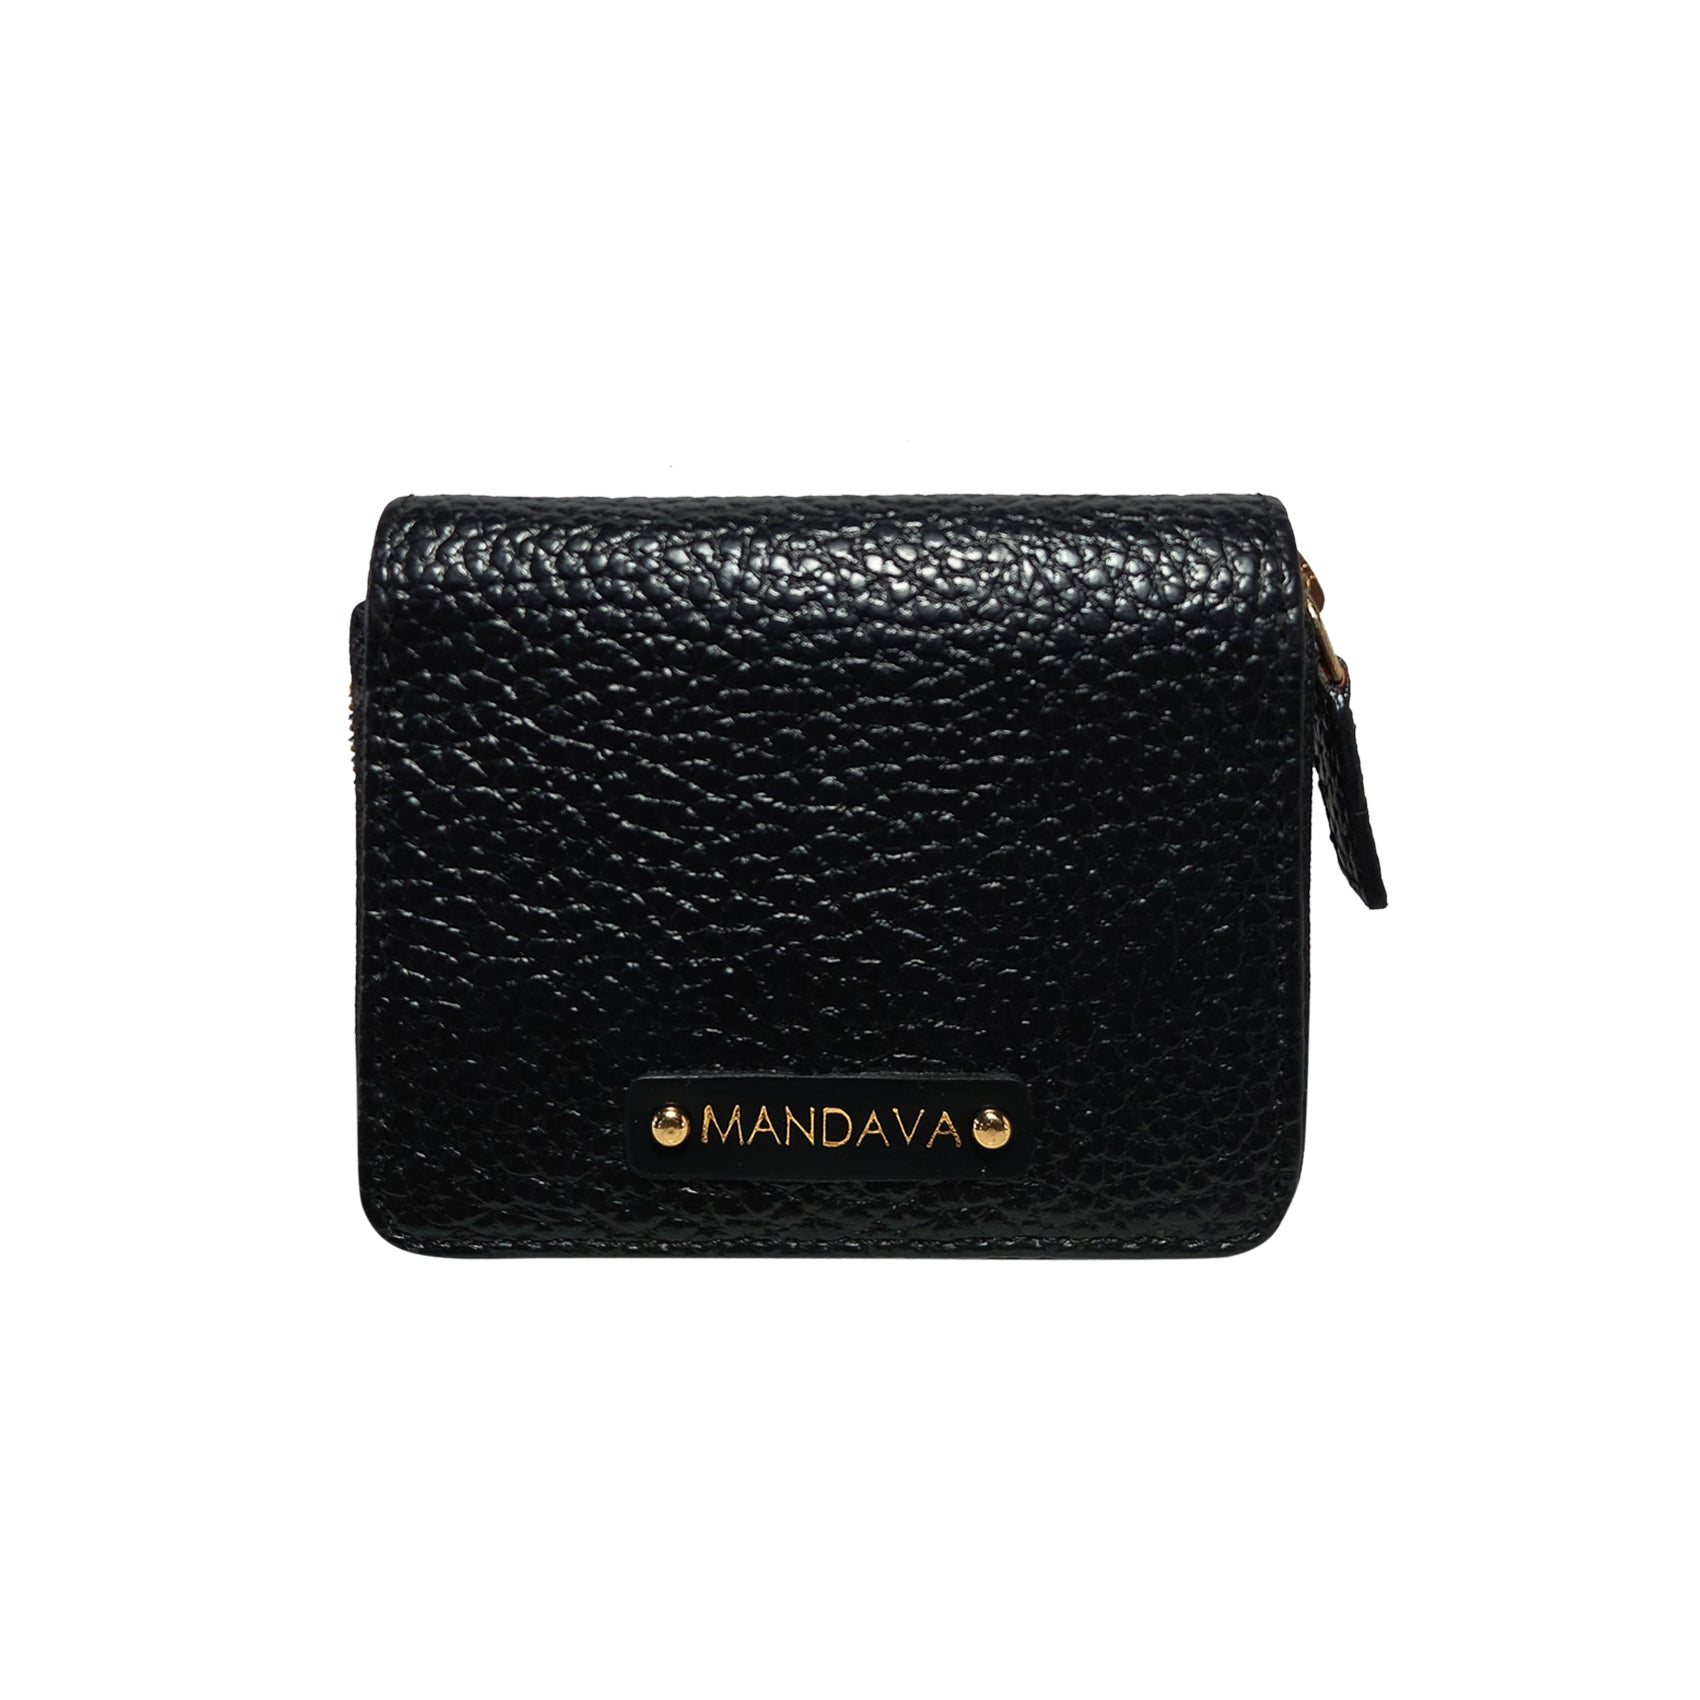 MANDAVA Ladies PU Leather Hand Clutch Wallet | Women's Zipper Purse Bag  with Detachable Wristlet Strap (